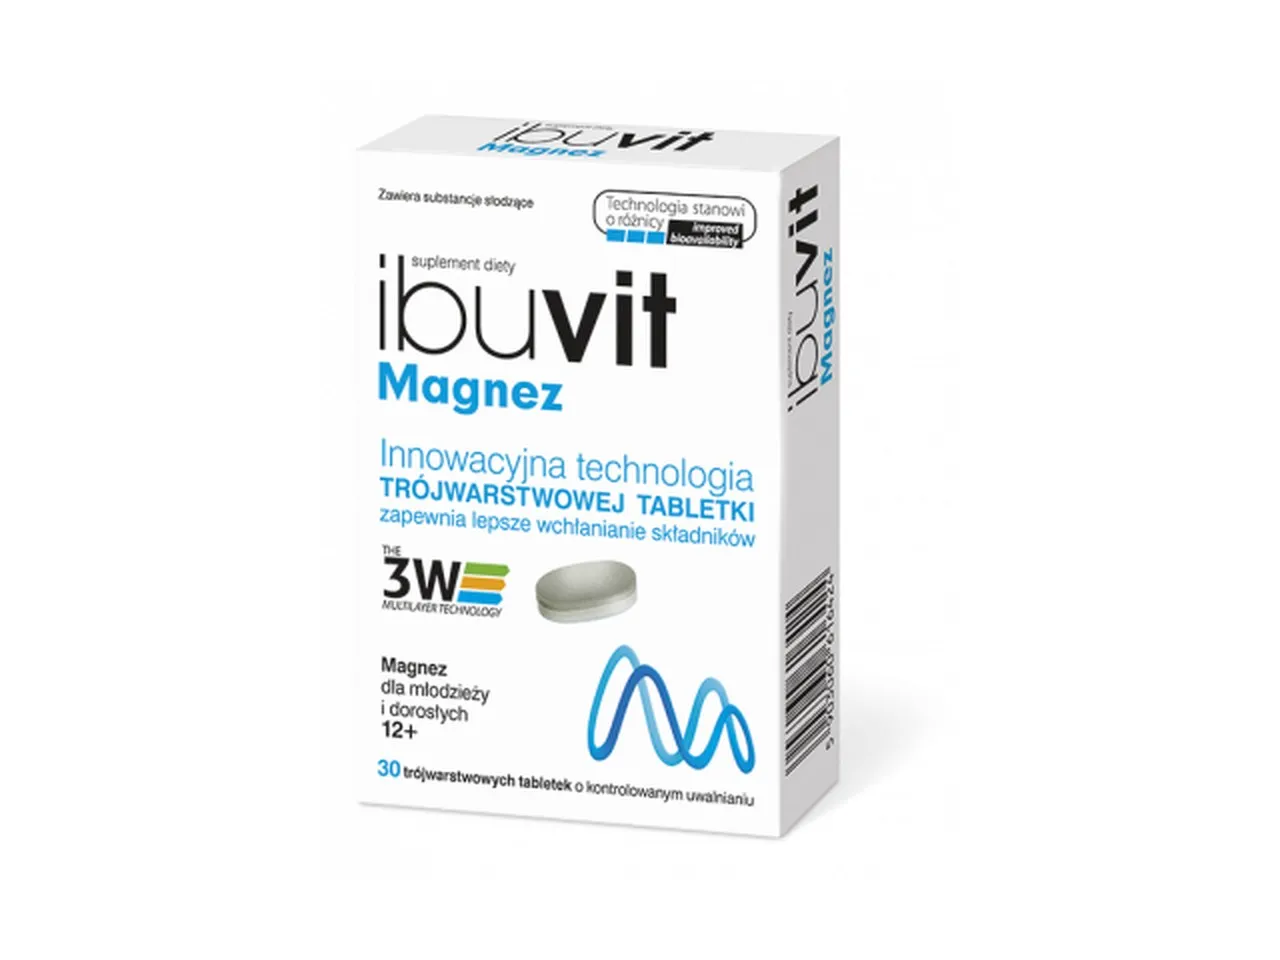 Ibuvit Magnez, suplement diety, 30 tabletek